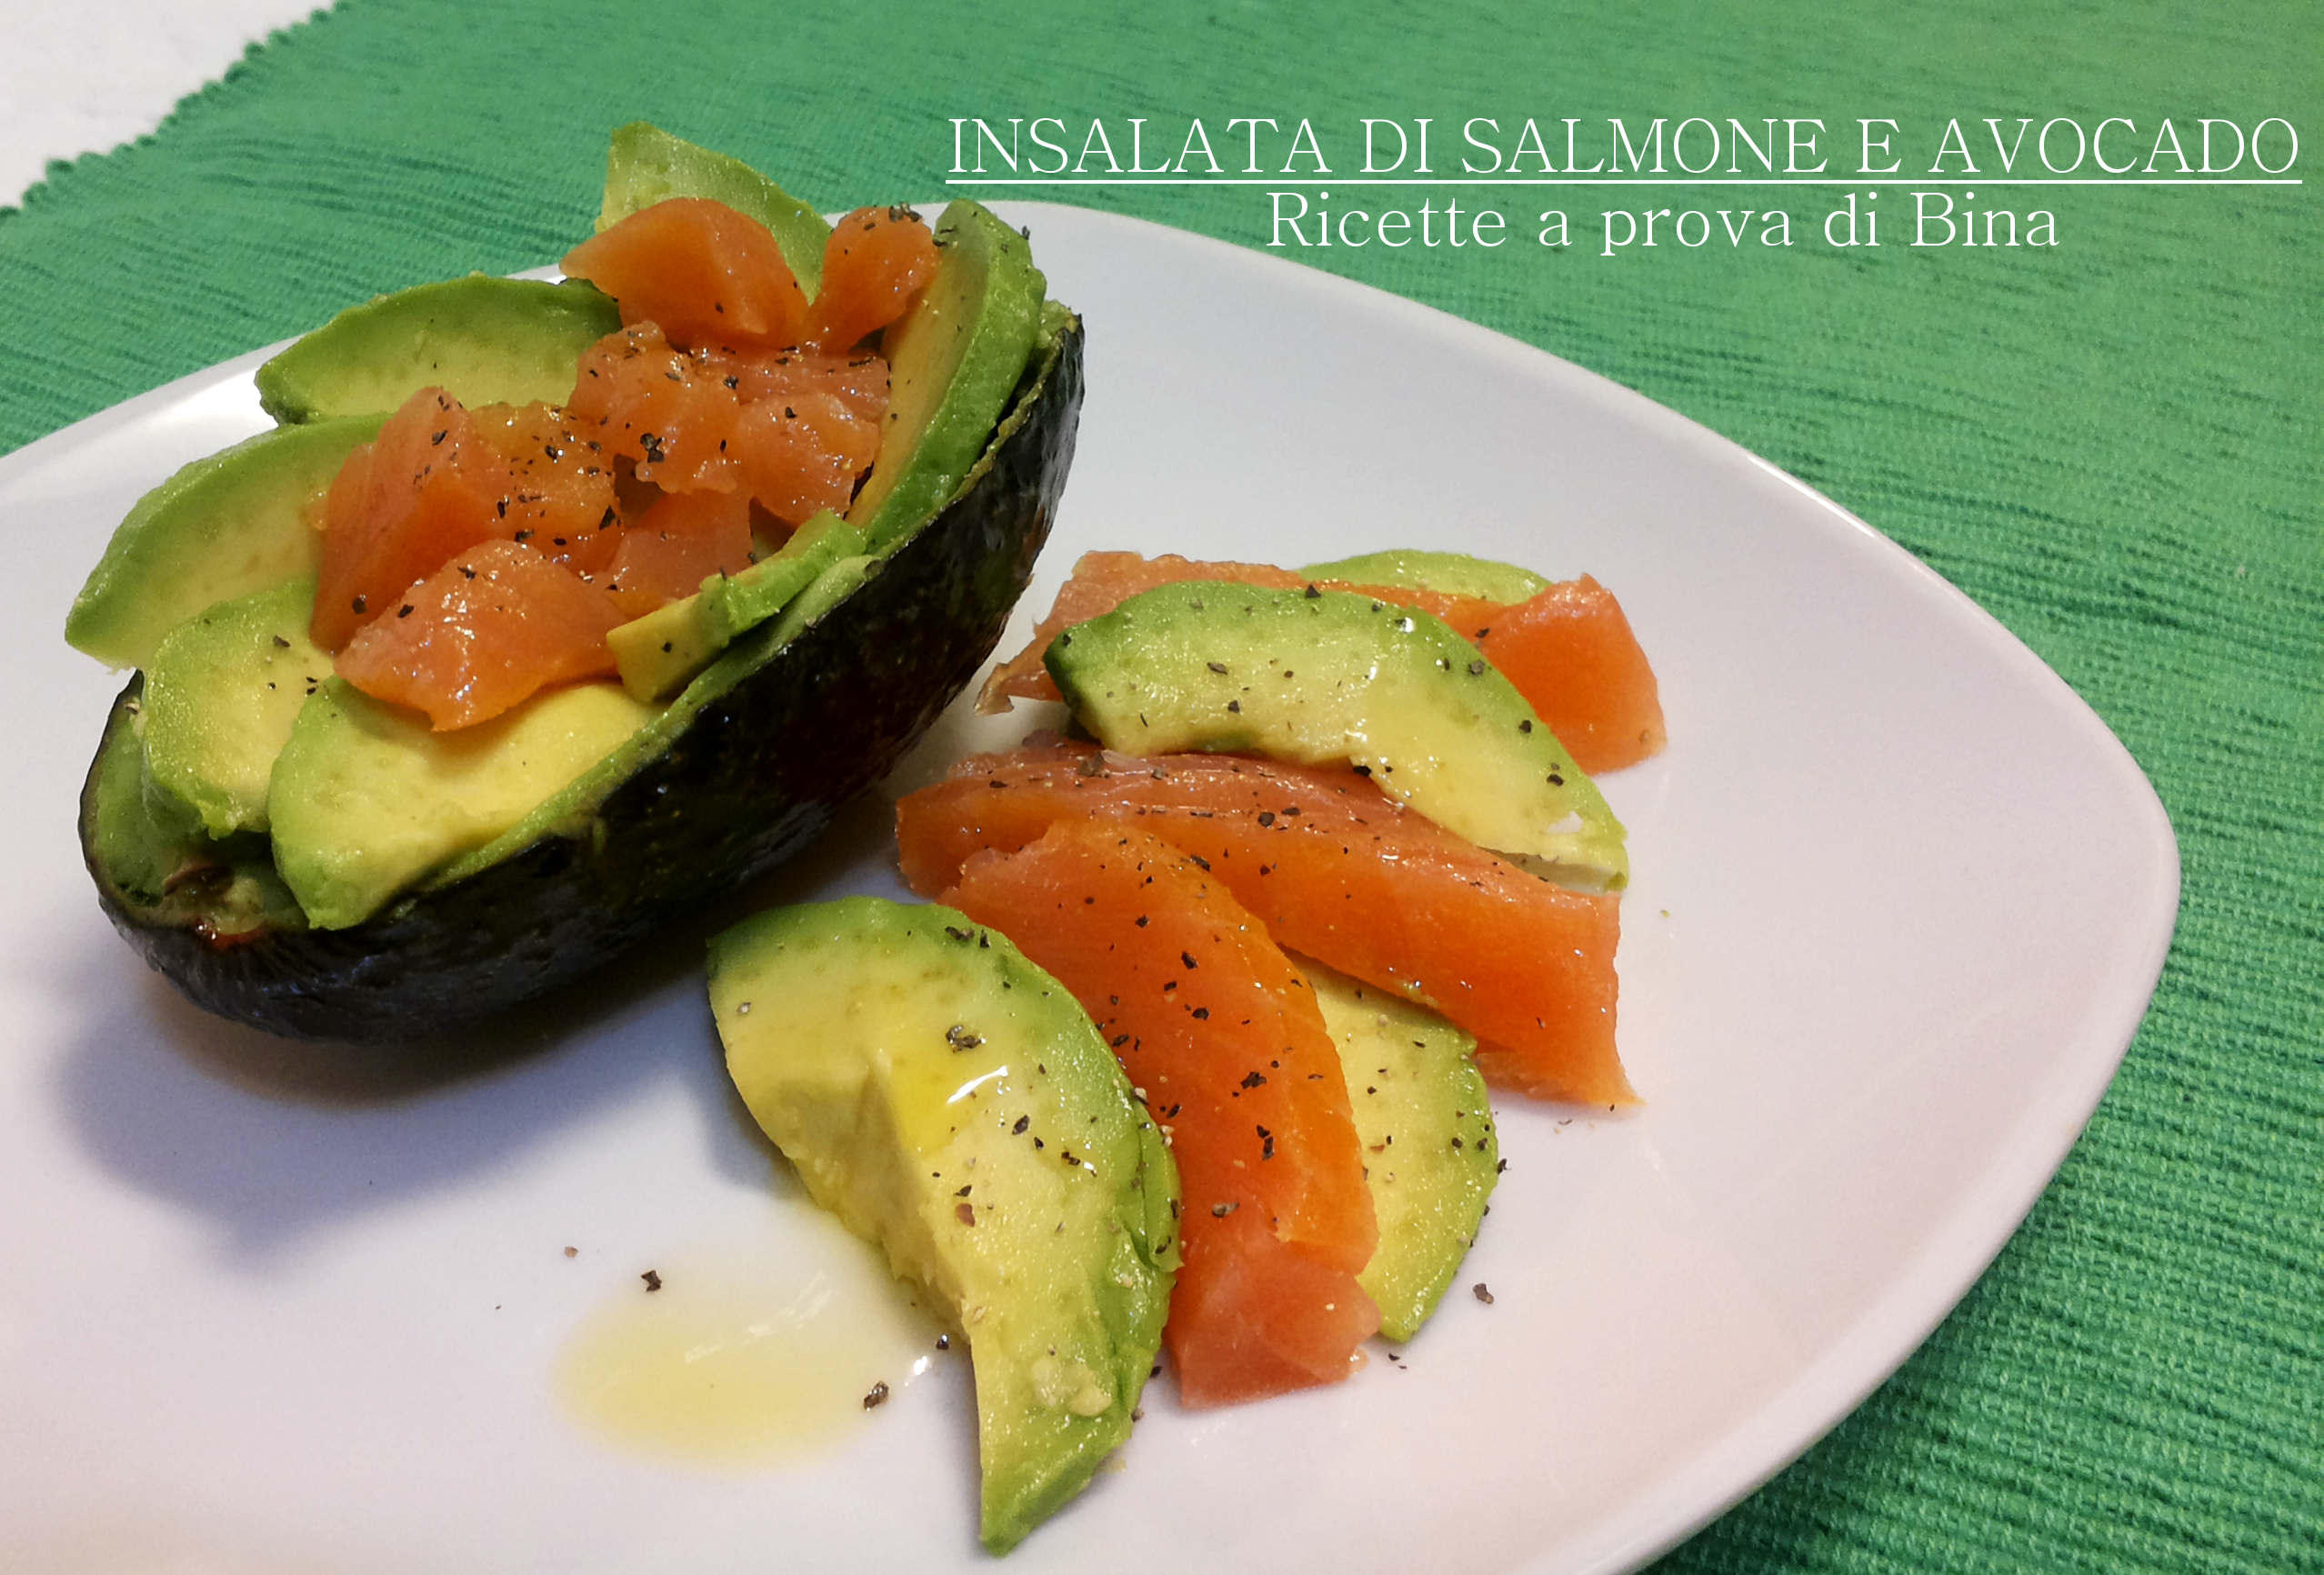 Insalata di salmone e avocado ricette a prova di bina for Salmone ricette